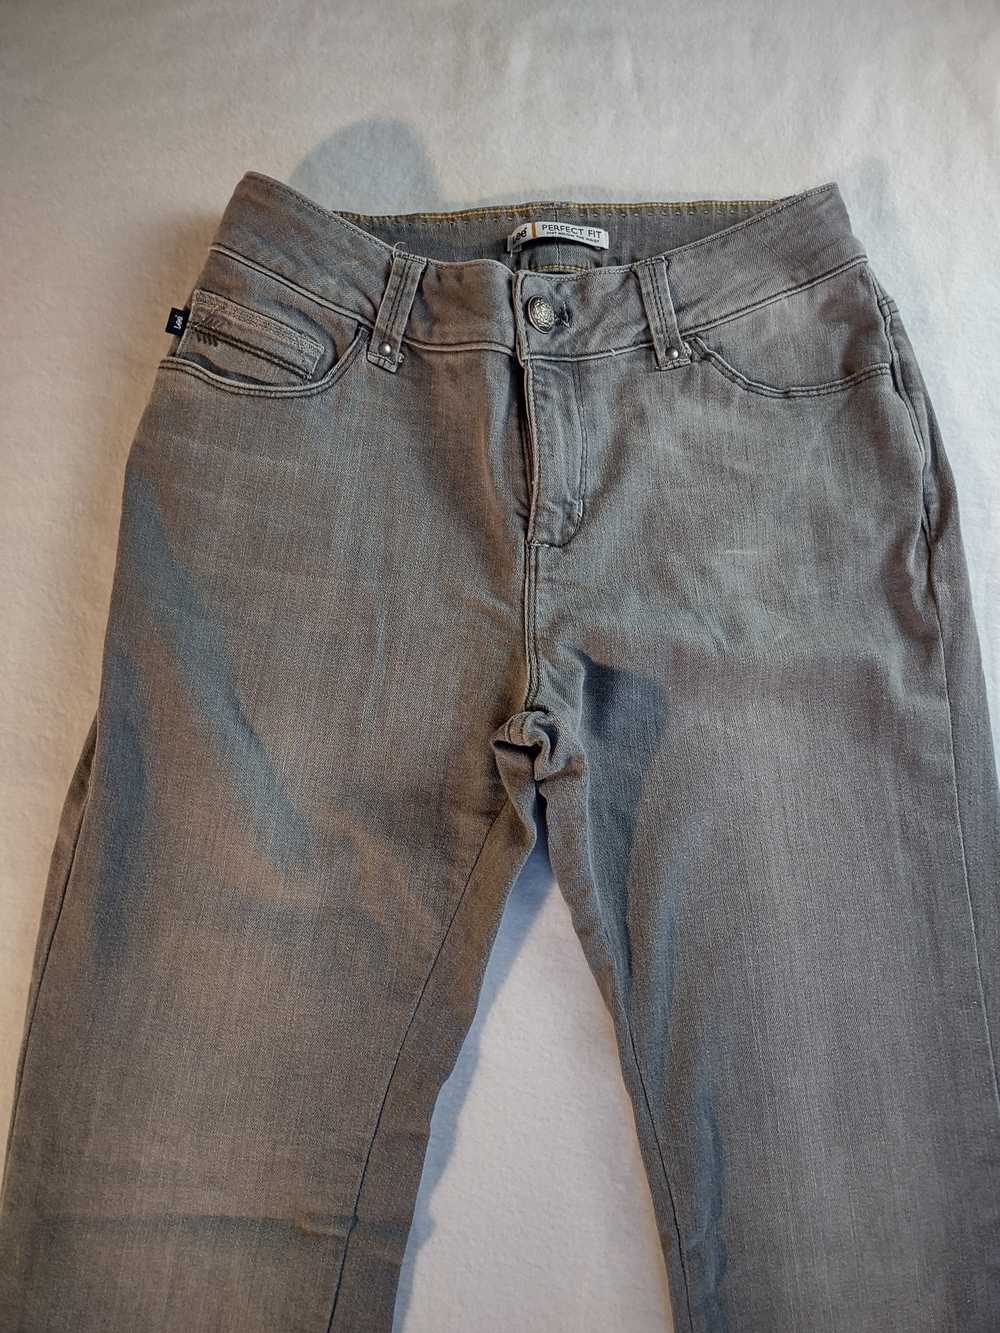 Lee Lee Perfect Fit Just Below Waist denim jeans … - image 12